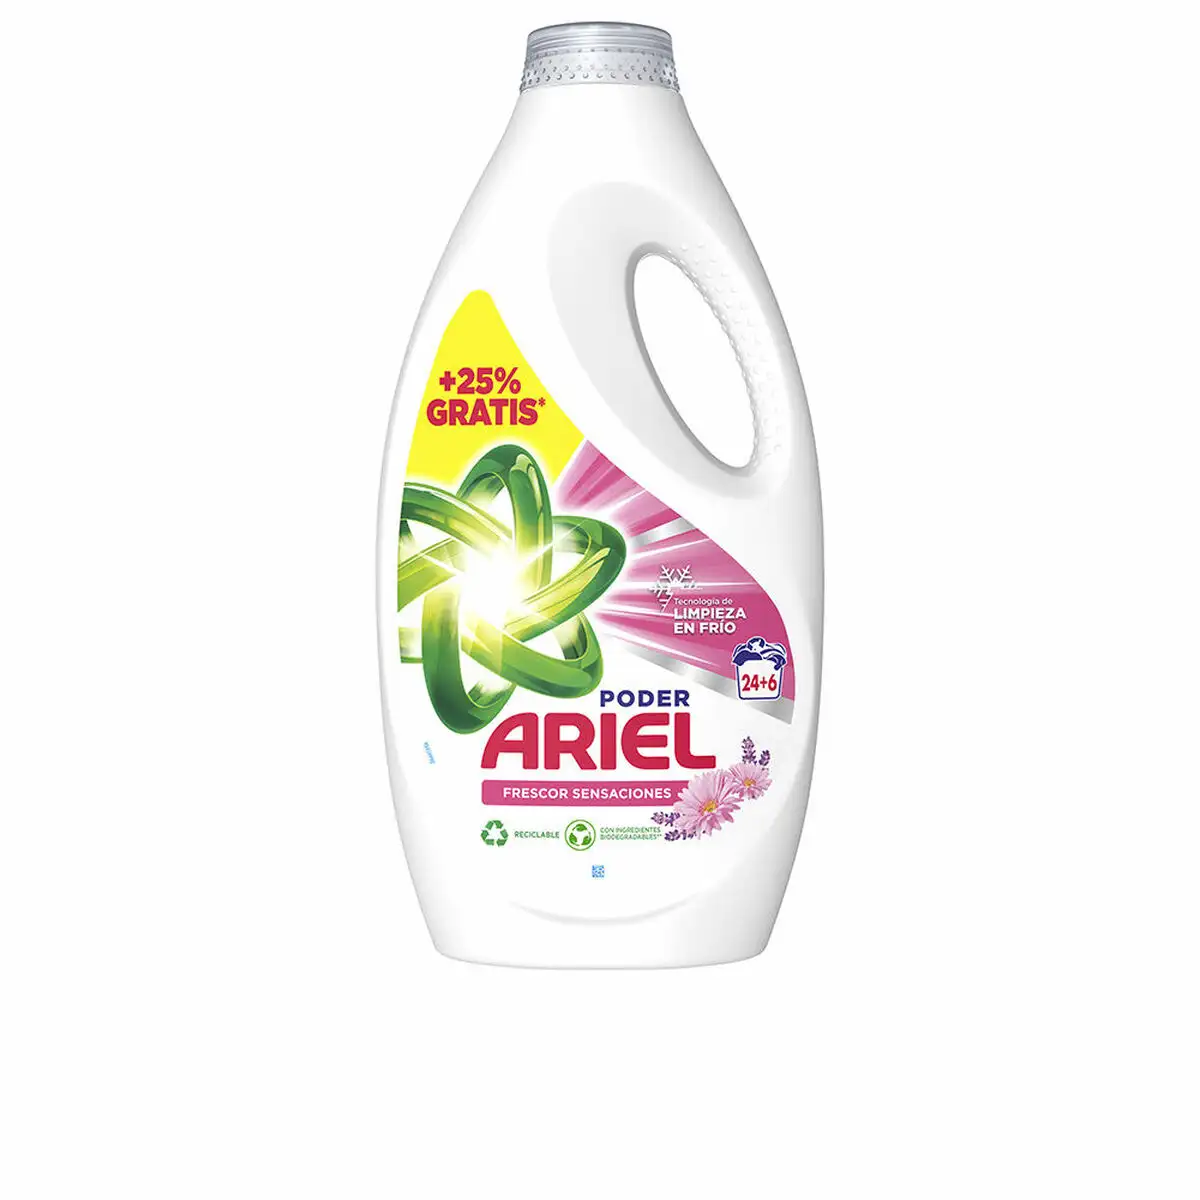 Detergent liquide ariel fresh sensations 30 lavages_7079. DIAYTAR SENEGAL - L'Art du Shopping Distinctif. Naviguez à travers notre gamme soigneusement sélectionnée et choisissez des produits qui définissent votre mode de vie.